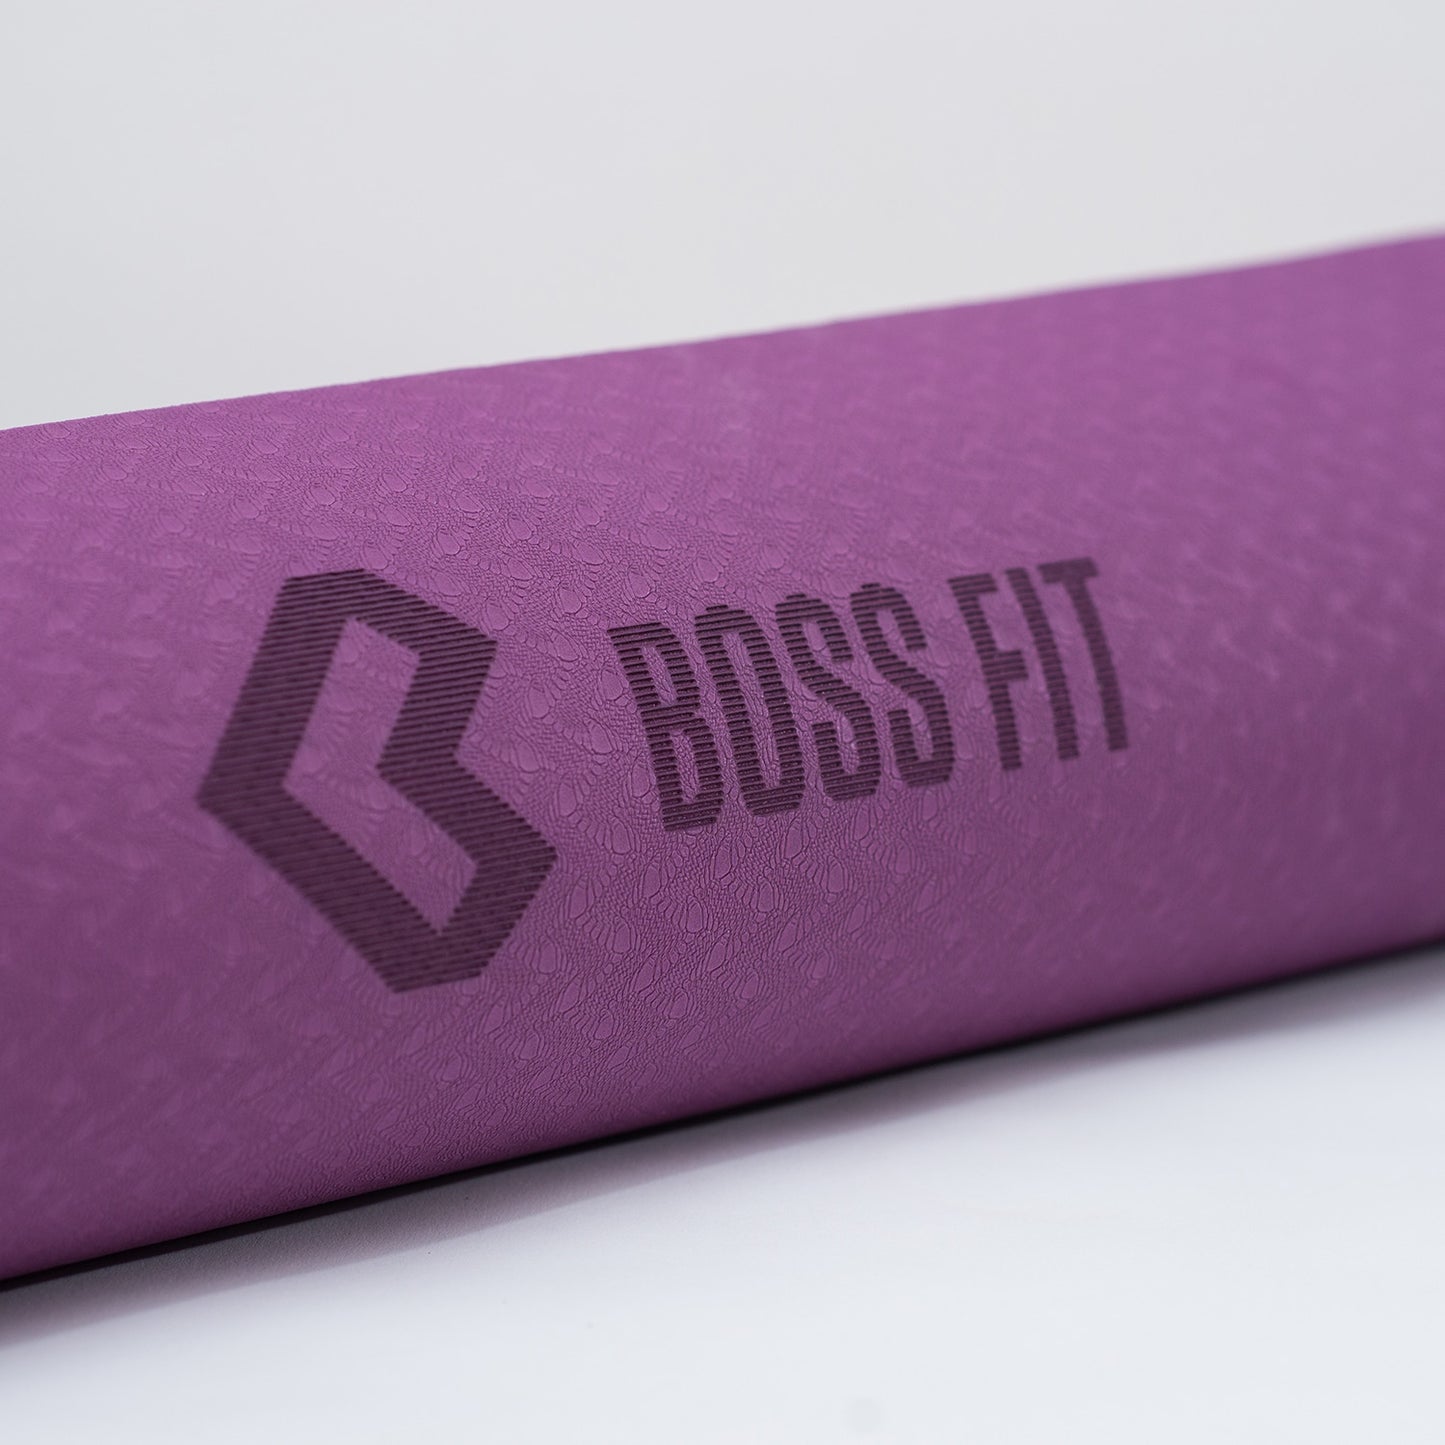 Boss Fit Workout Mat